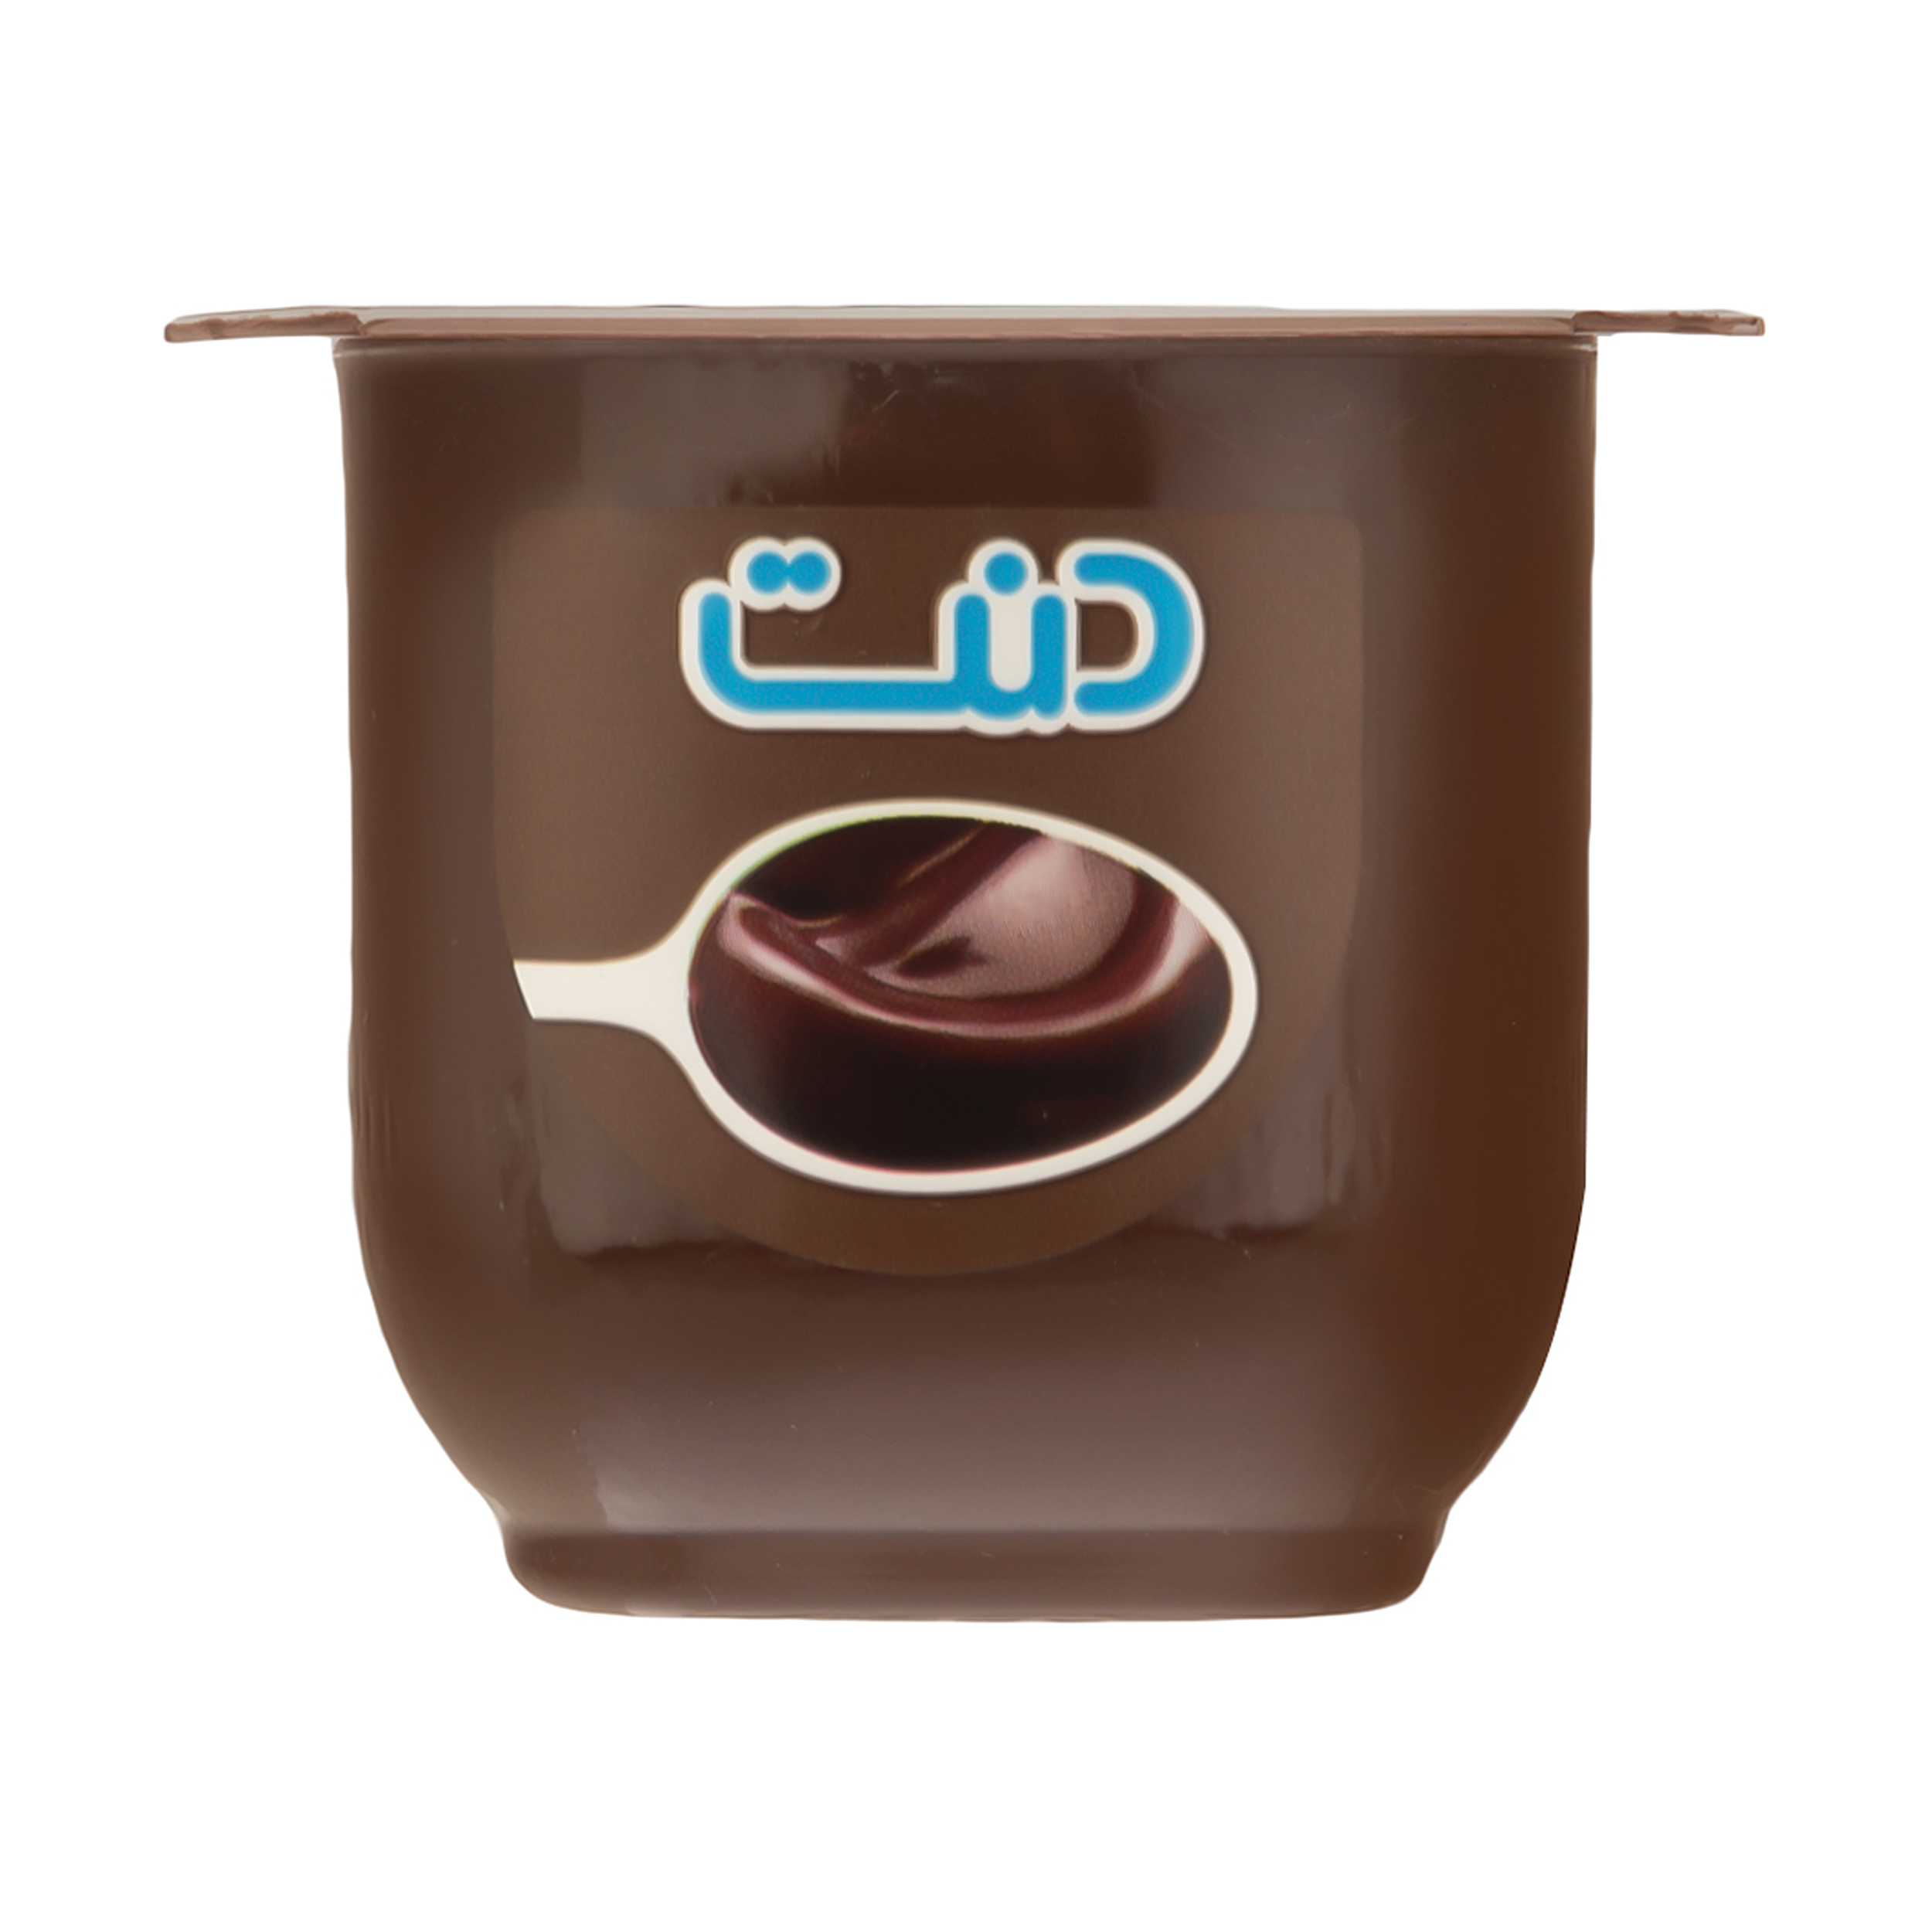 دسر فرانسوی شکلاتی دنت - 100 گرم - فروشگاه اینترنتی هایپر می